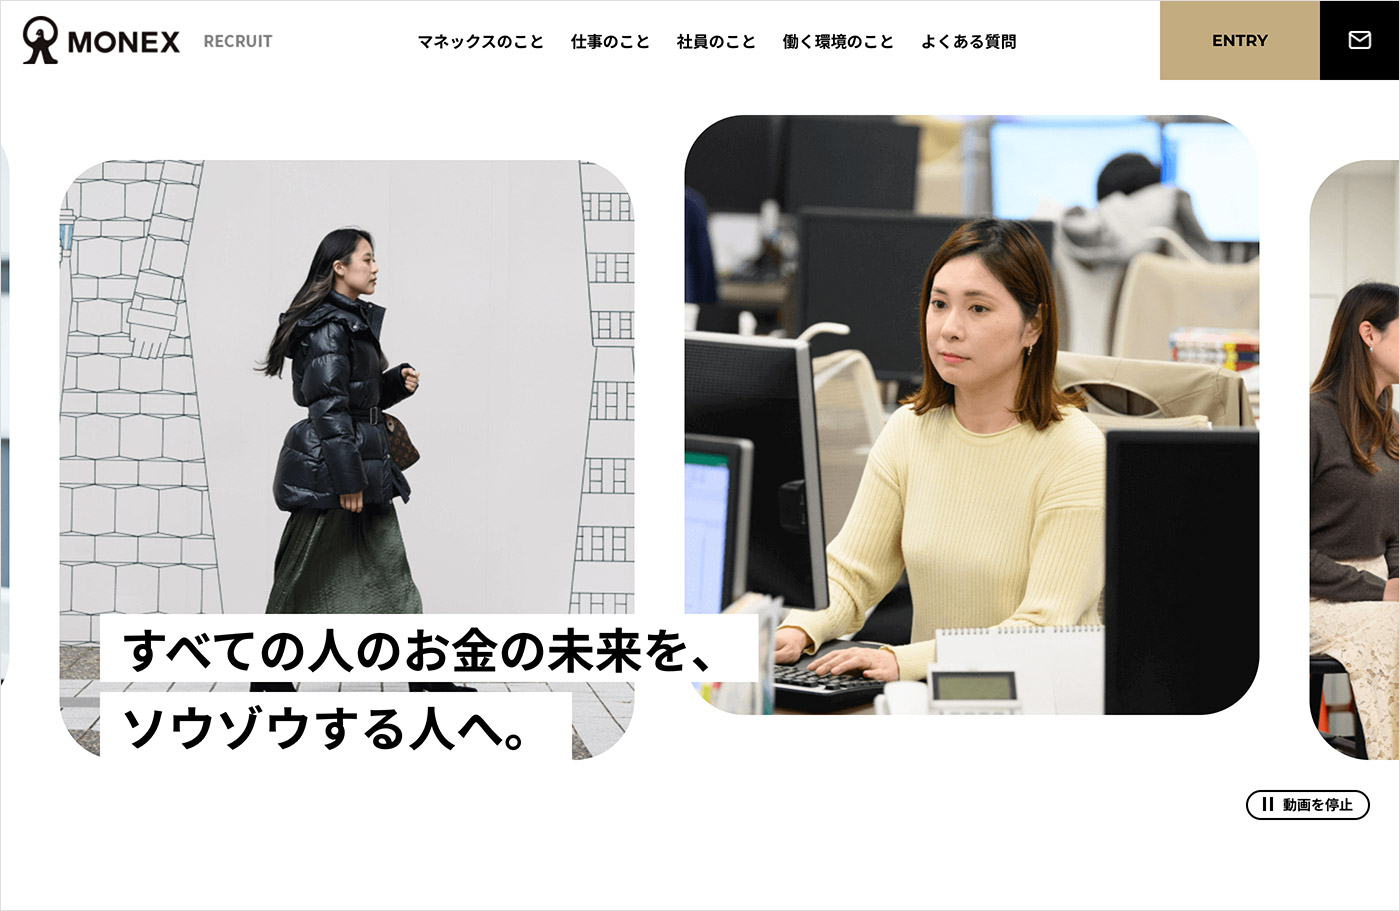 マネックス証券株式会社 採用サイトウェブサイトの画面キャプチャ画像